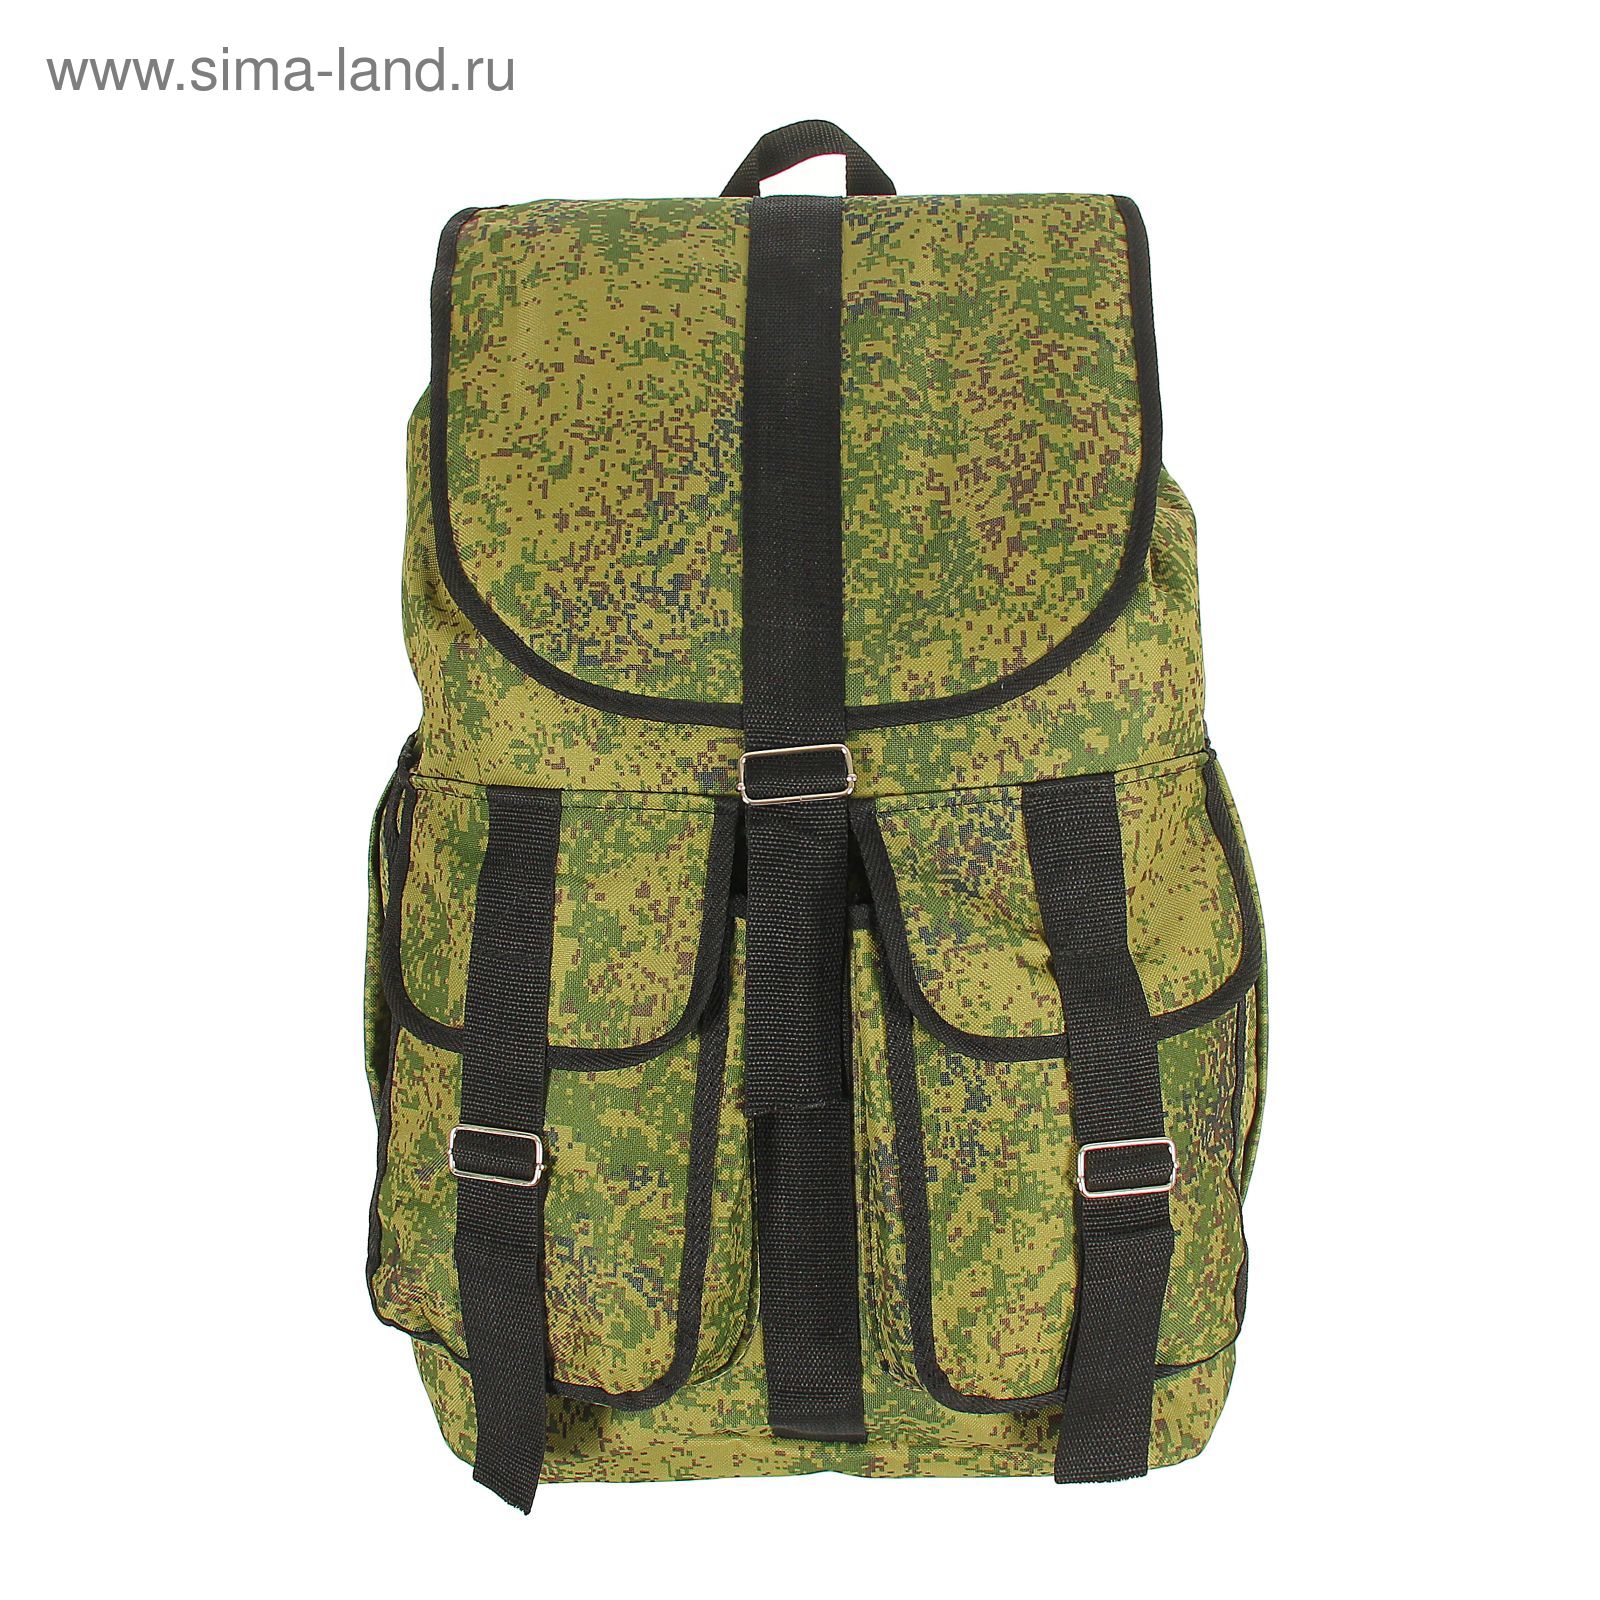 Рюкзак туристический "Камуфляж", 1 отдел, 3 наружных кармана, объём - 55л, цвет хаки